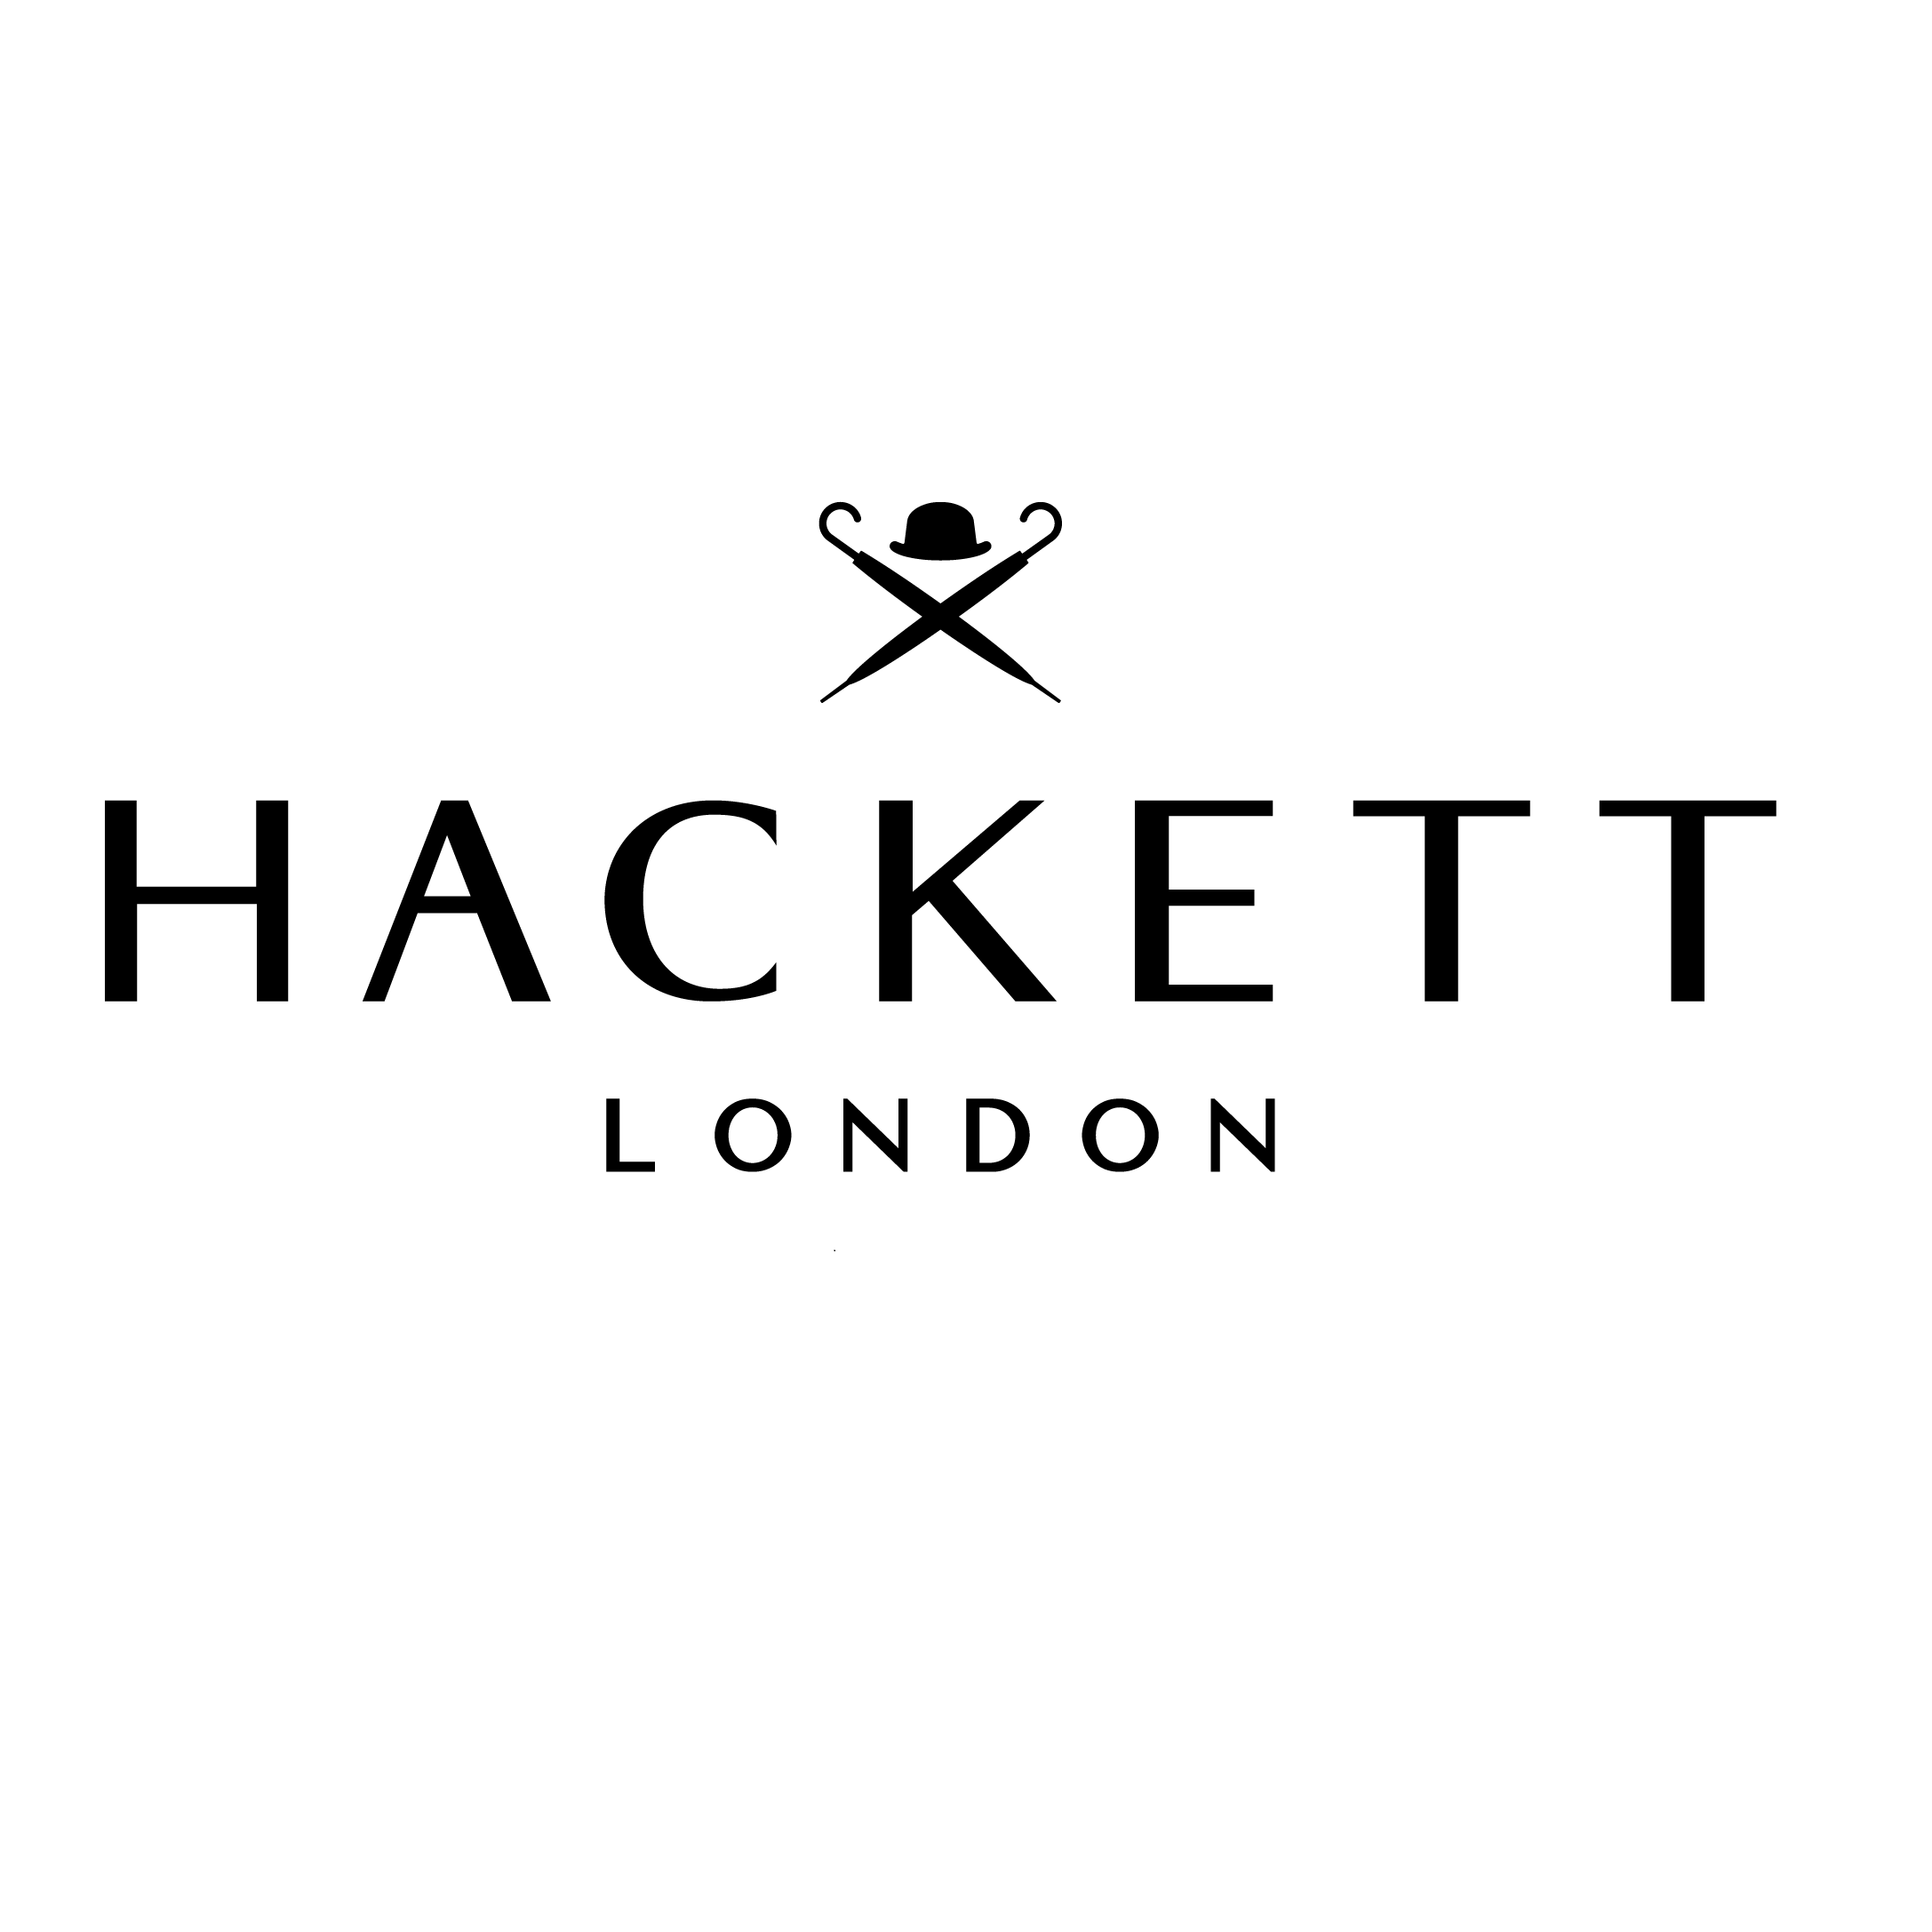 Hackett London Kö Galerie Düsseldorf in Düsseldorf - Logo